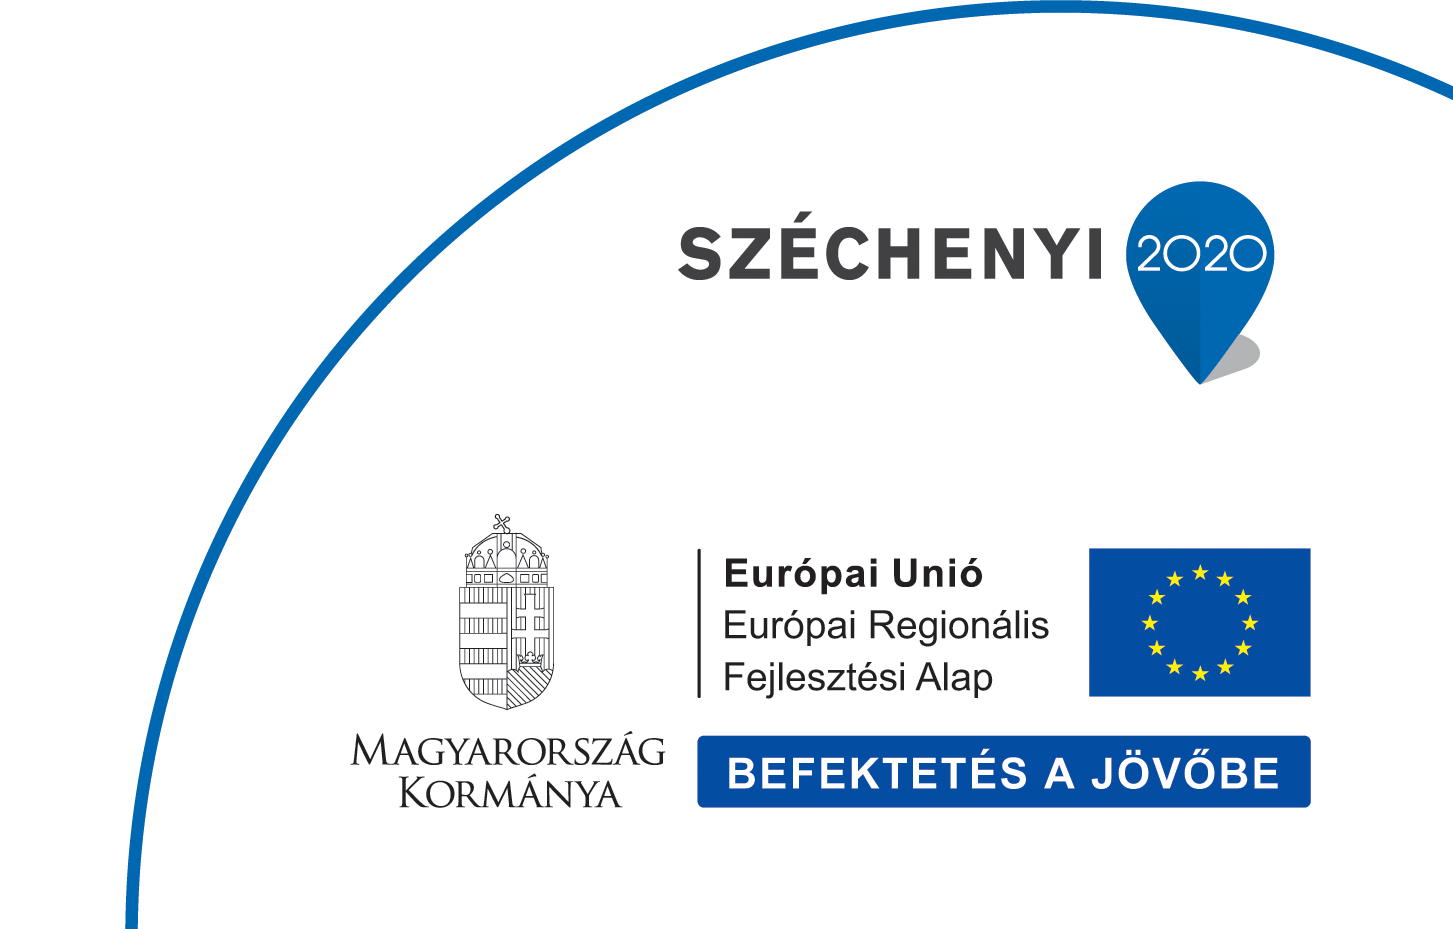 Széchenyi 2020 pályázati logó